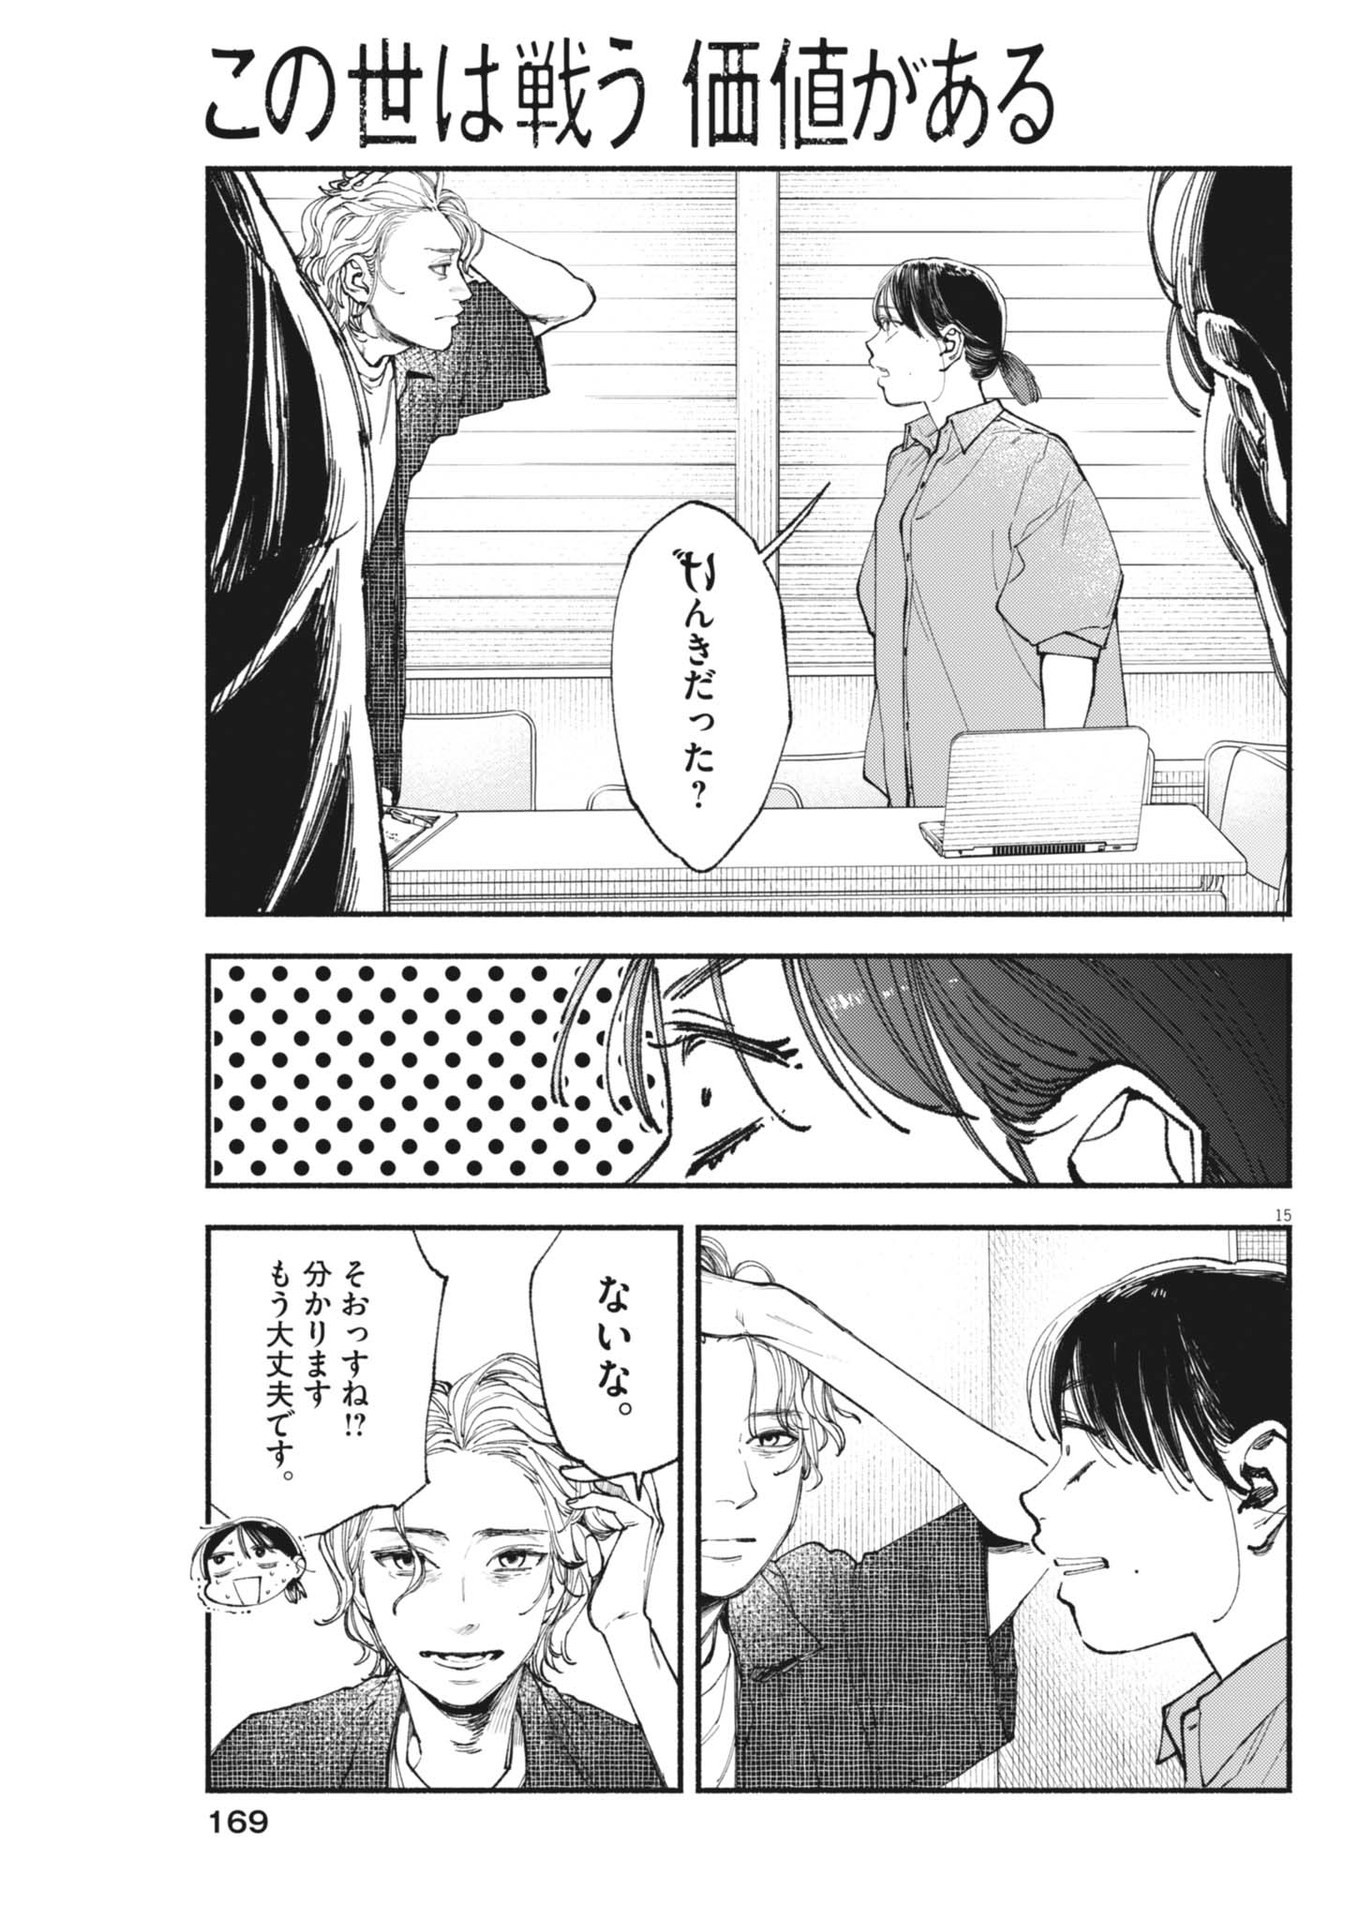 Konoyo wa Tatakau Kachi ga Aru  - Chapter 28 - Page 15